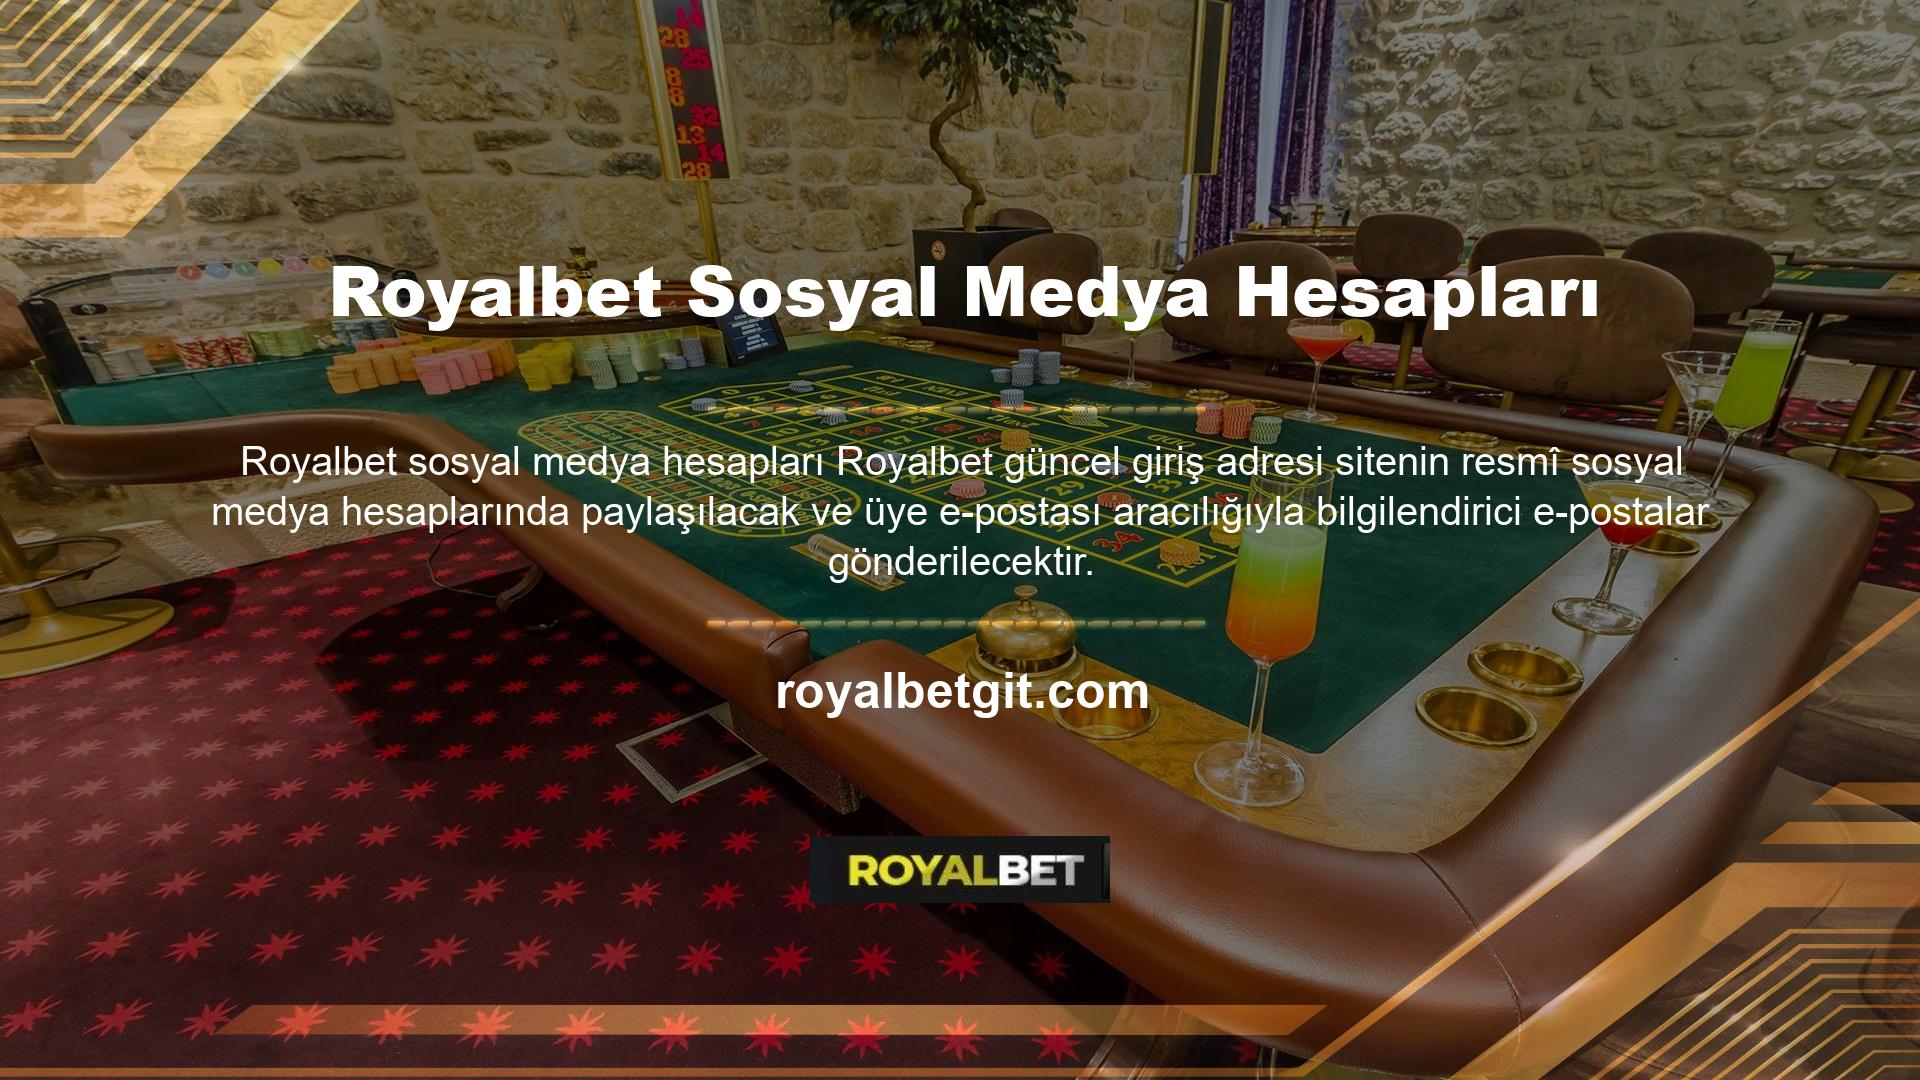 Ayrıca web sitemizdeki Royalbet giriş butonuna tıkladığınız saate bakılmaksızın yeni giriş butonunu kullanabileceğinizi de belirtmek isteriz